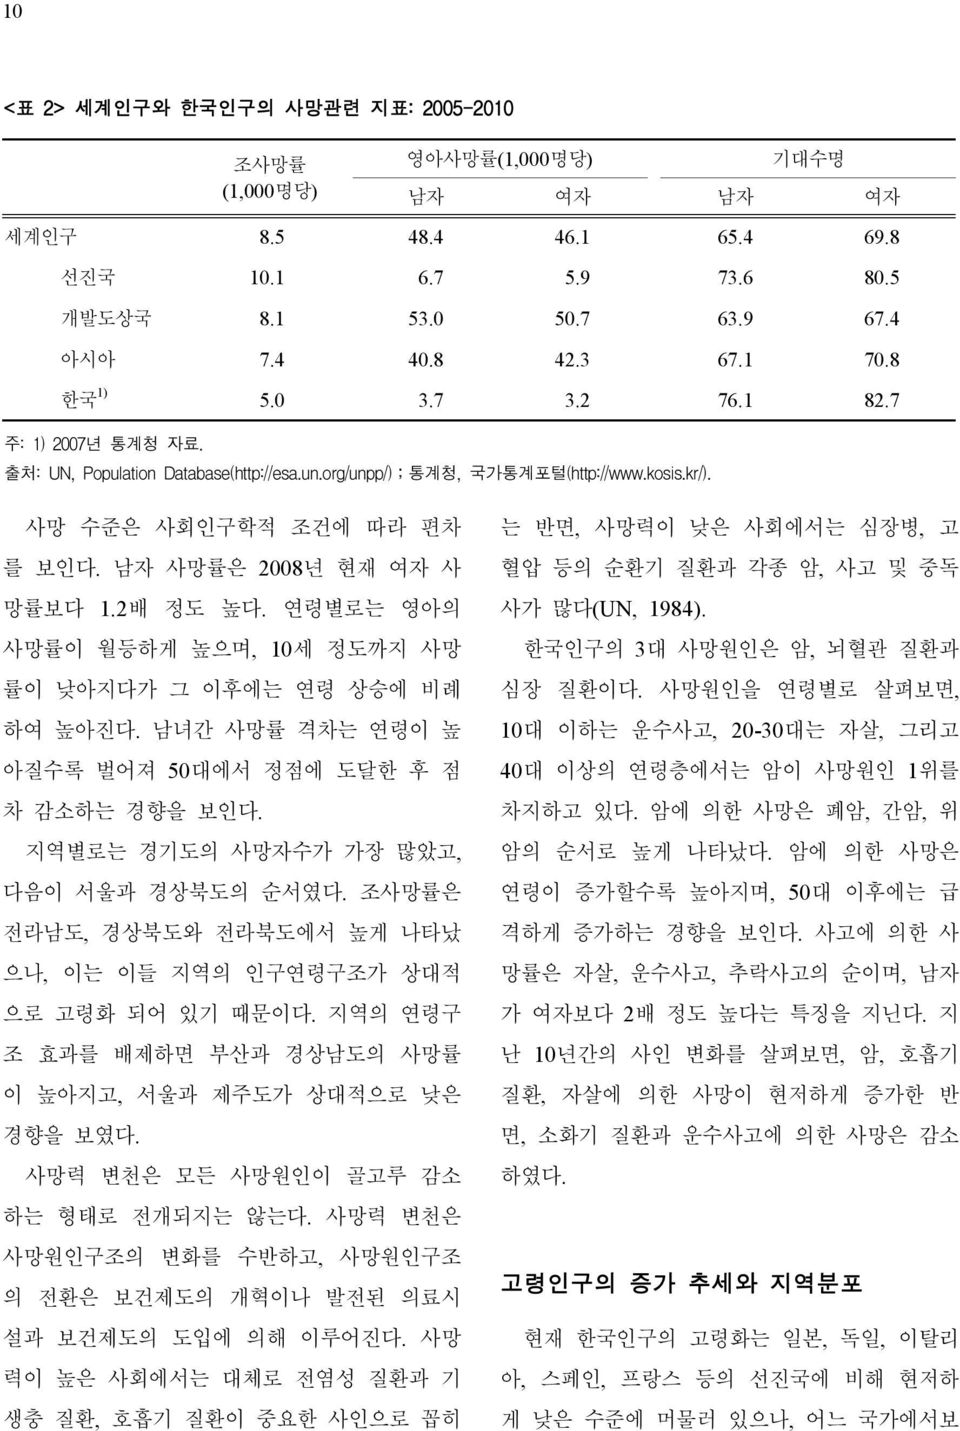 연령별로는 영아의 사망률이 월등하게 높으며, 10세 정도까지 사망 률이 낮아지다가 그 이후에는 연령 상승에 비례 하여 높아진다. 남녀간 사망률 격차는 연령이 높 아질수록 벌어져 50대에서 정점에 도달한 후 점 차 감소하는 경향을 보인다. 지역별로는 경기도의 사망자수가 가장 많았고, 다음이 서울과 경상북도의 순서였다.